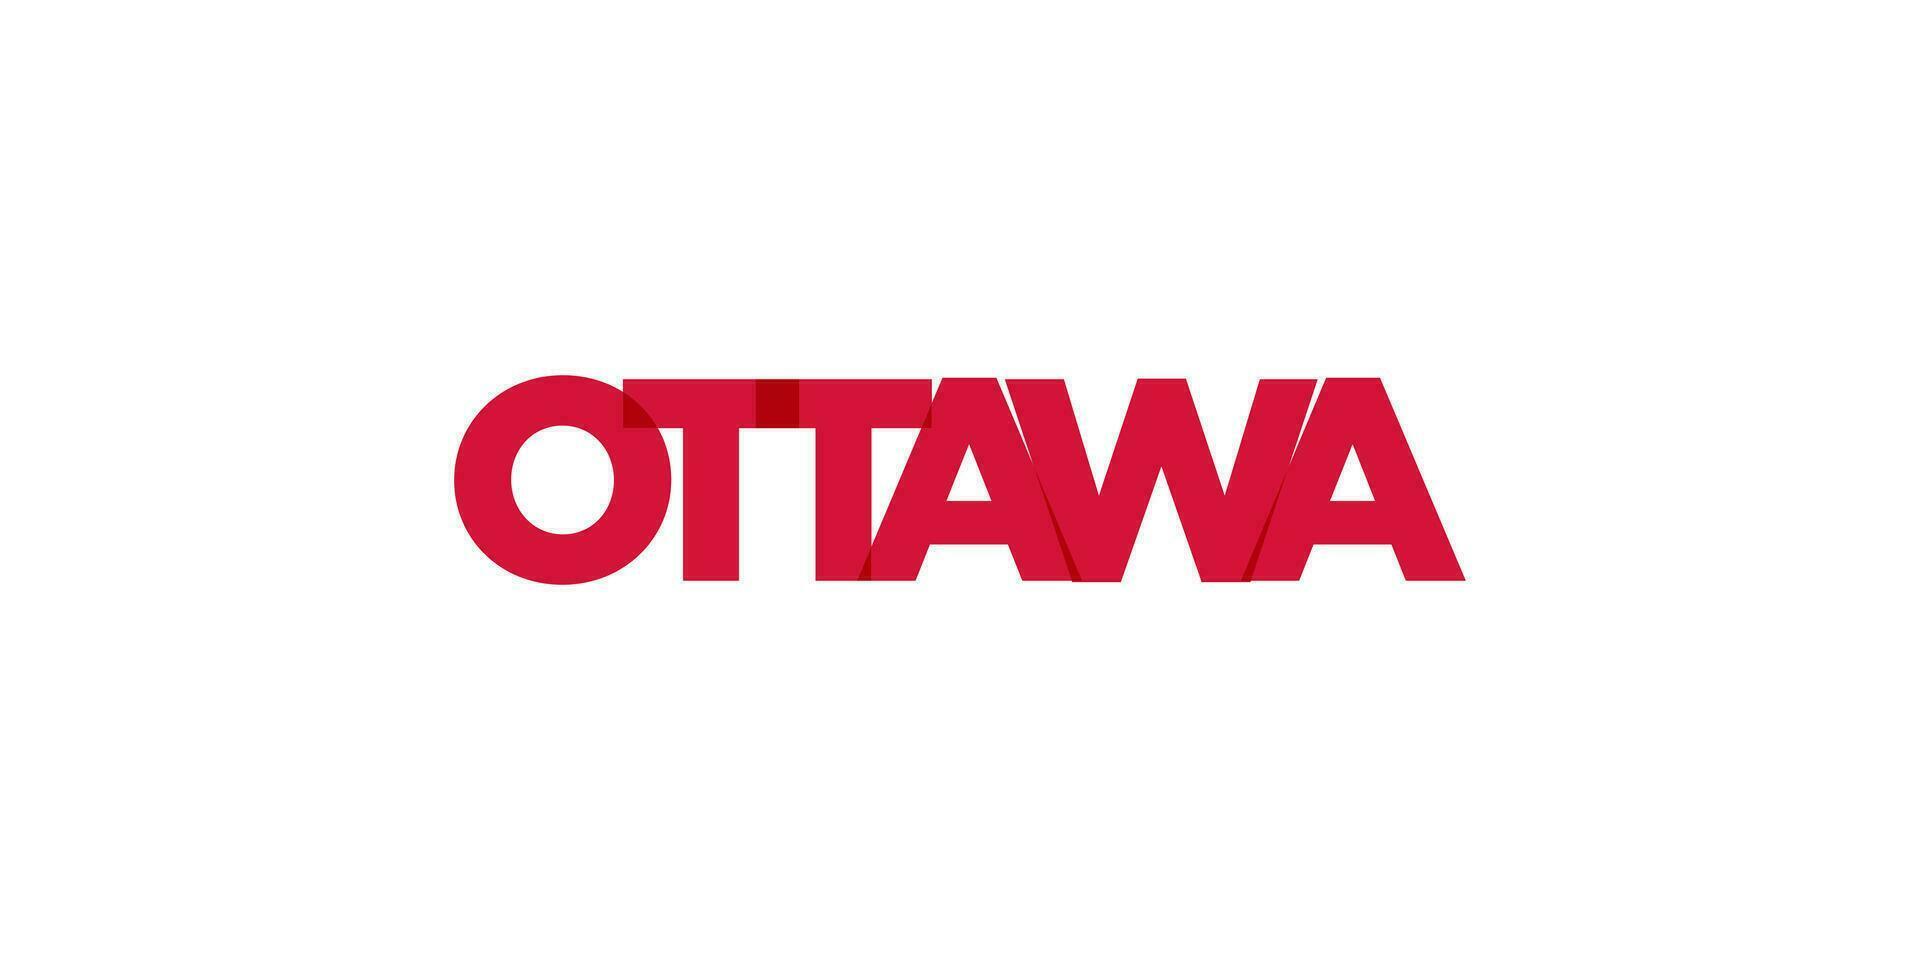 Ottawa im das Kanada Emblem. das Design Eigenschaften ein geometrisch Stil, Vektor Illustration mit Fett gedruckt Typografie im ein modern Schriftart. das Grafik Slogan Beschriftung.